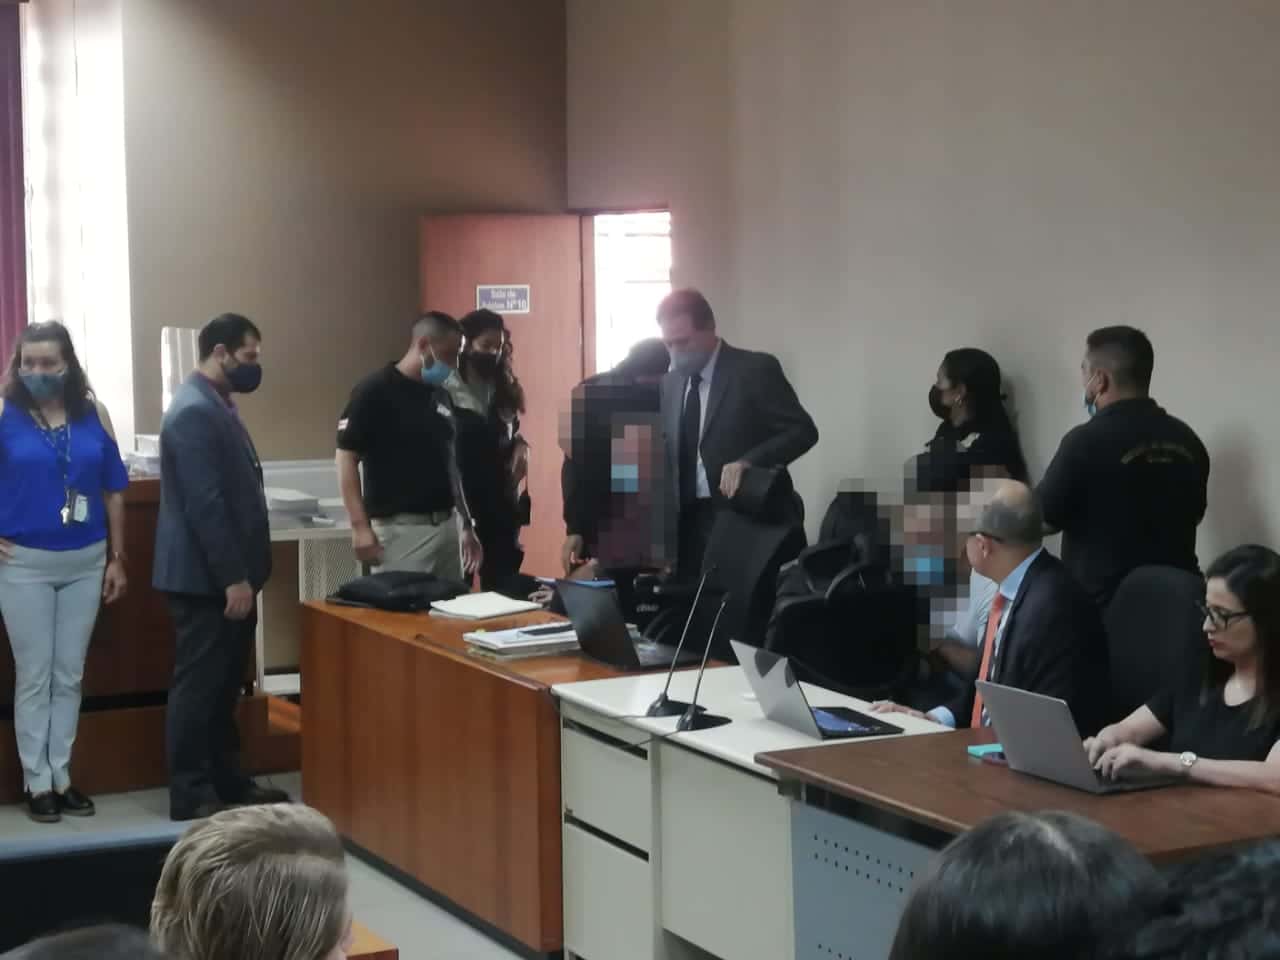 Abogado de implicado en caso de asesinato de María Luisa Cedeño dice que pidió el examen psiquiátrico para “no caer en indefensión”